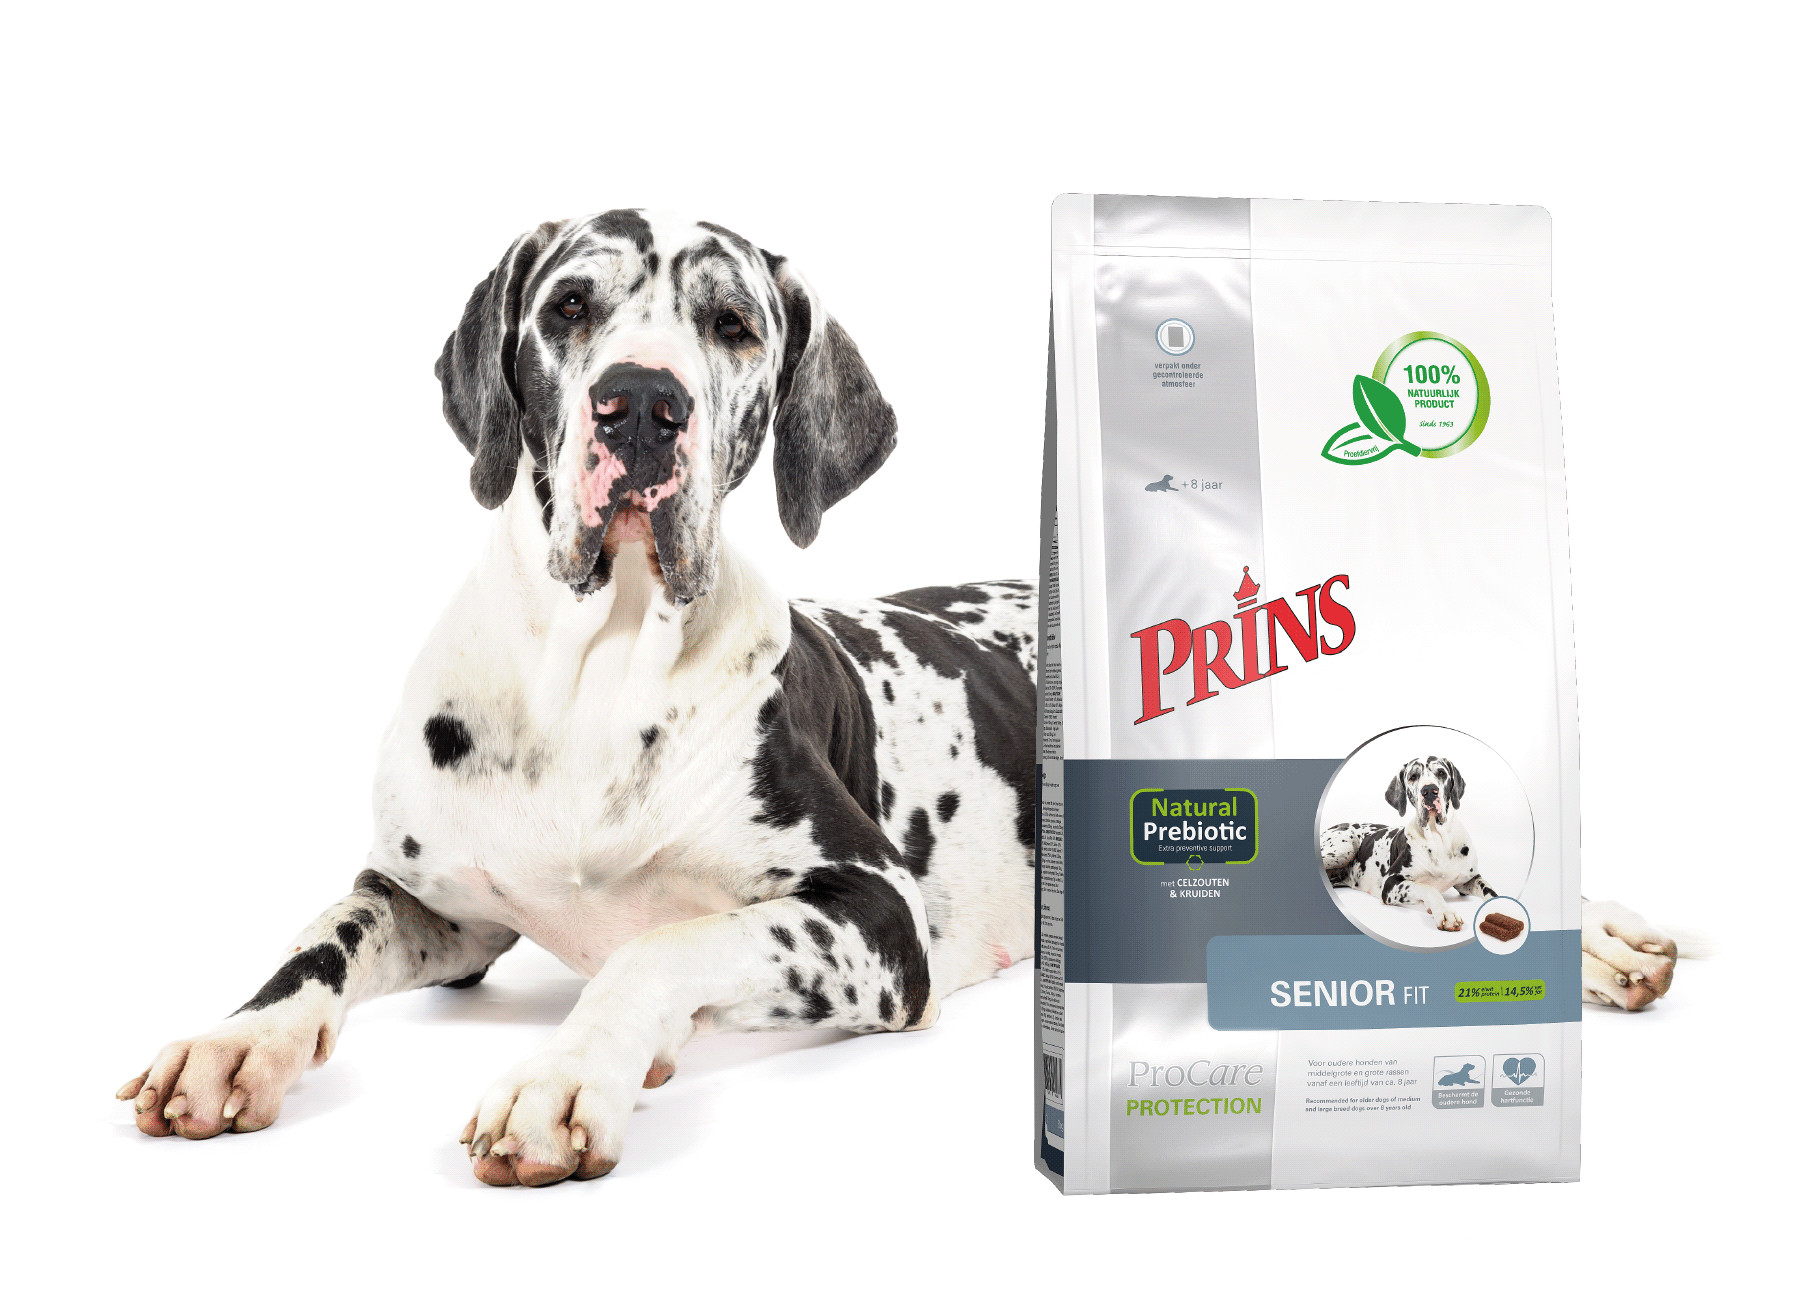 Prins ProCare Protection Senior Fit hondenvoer